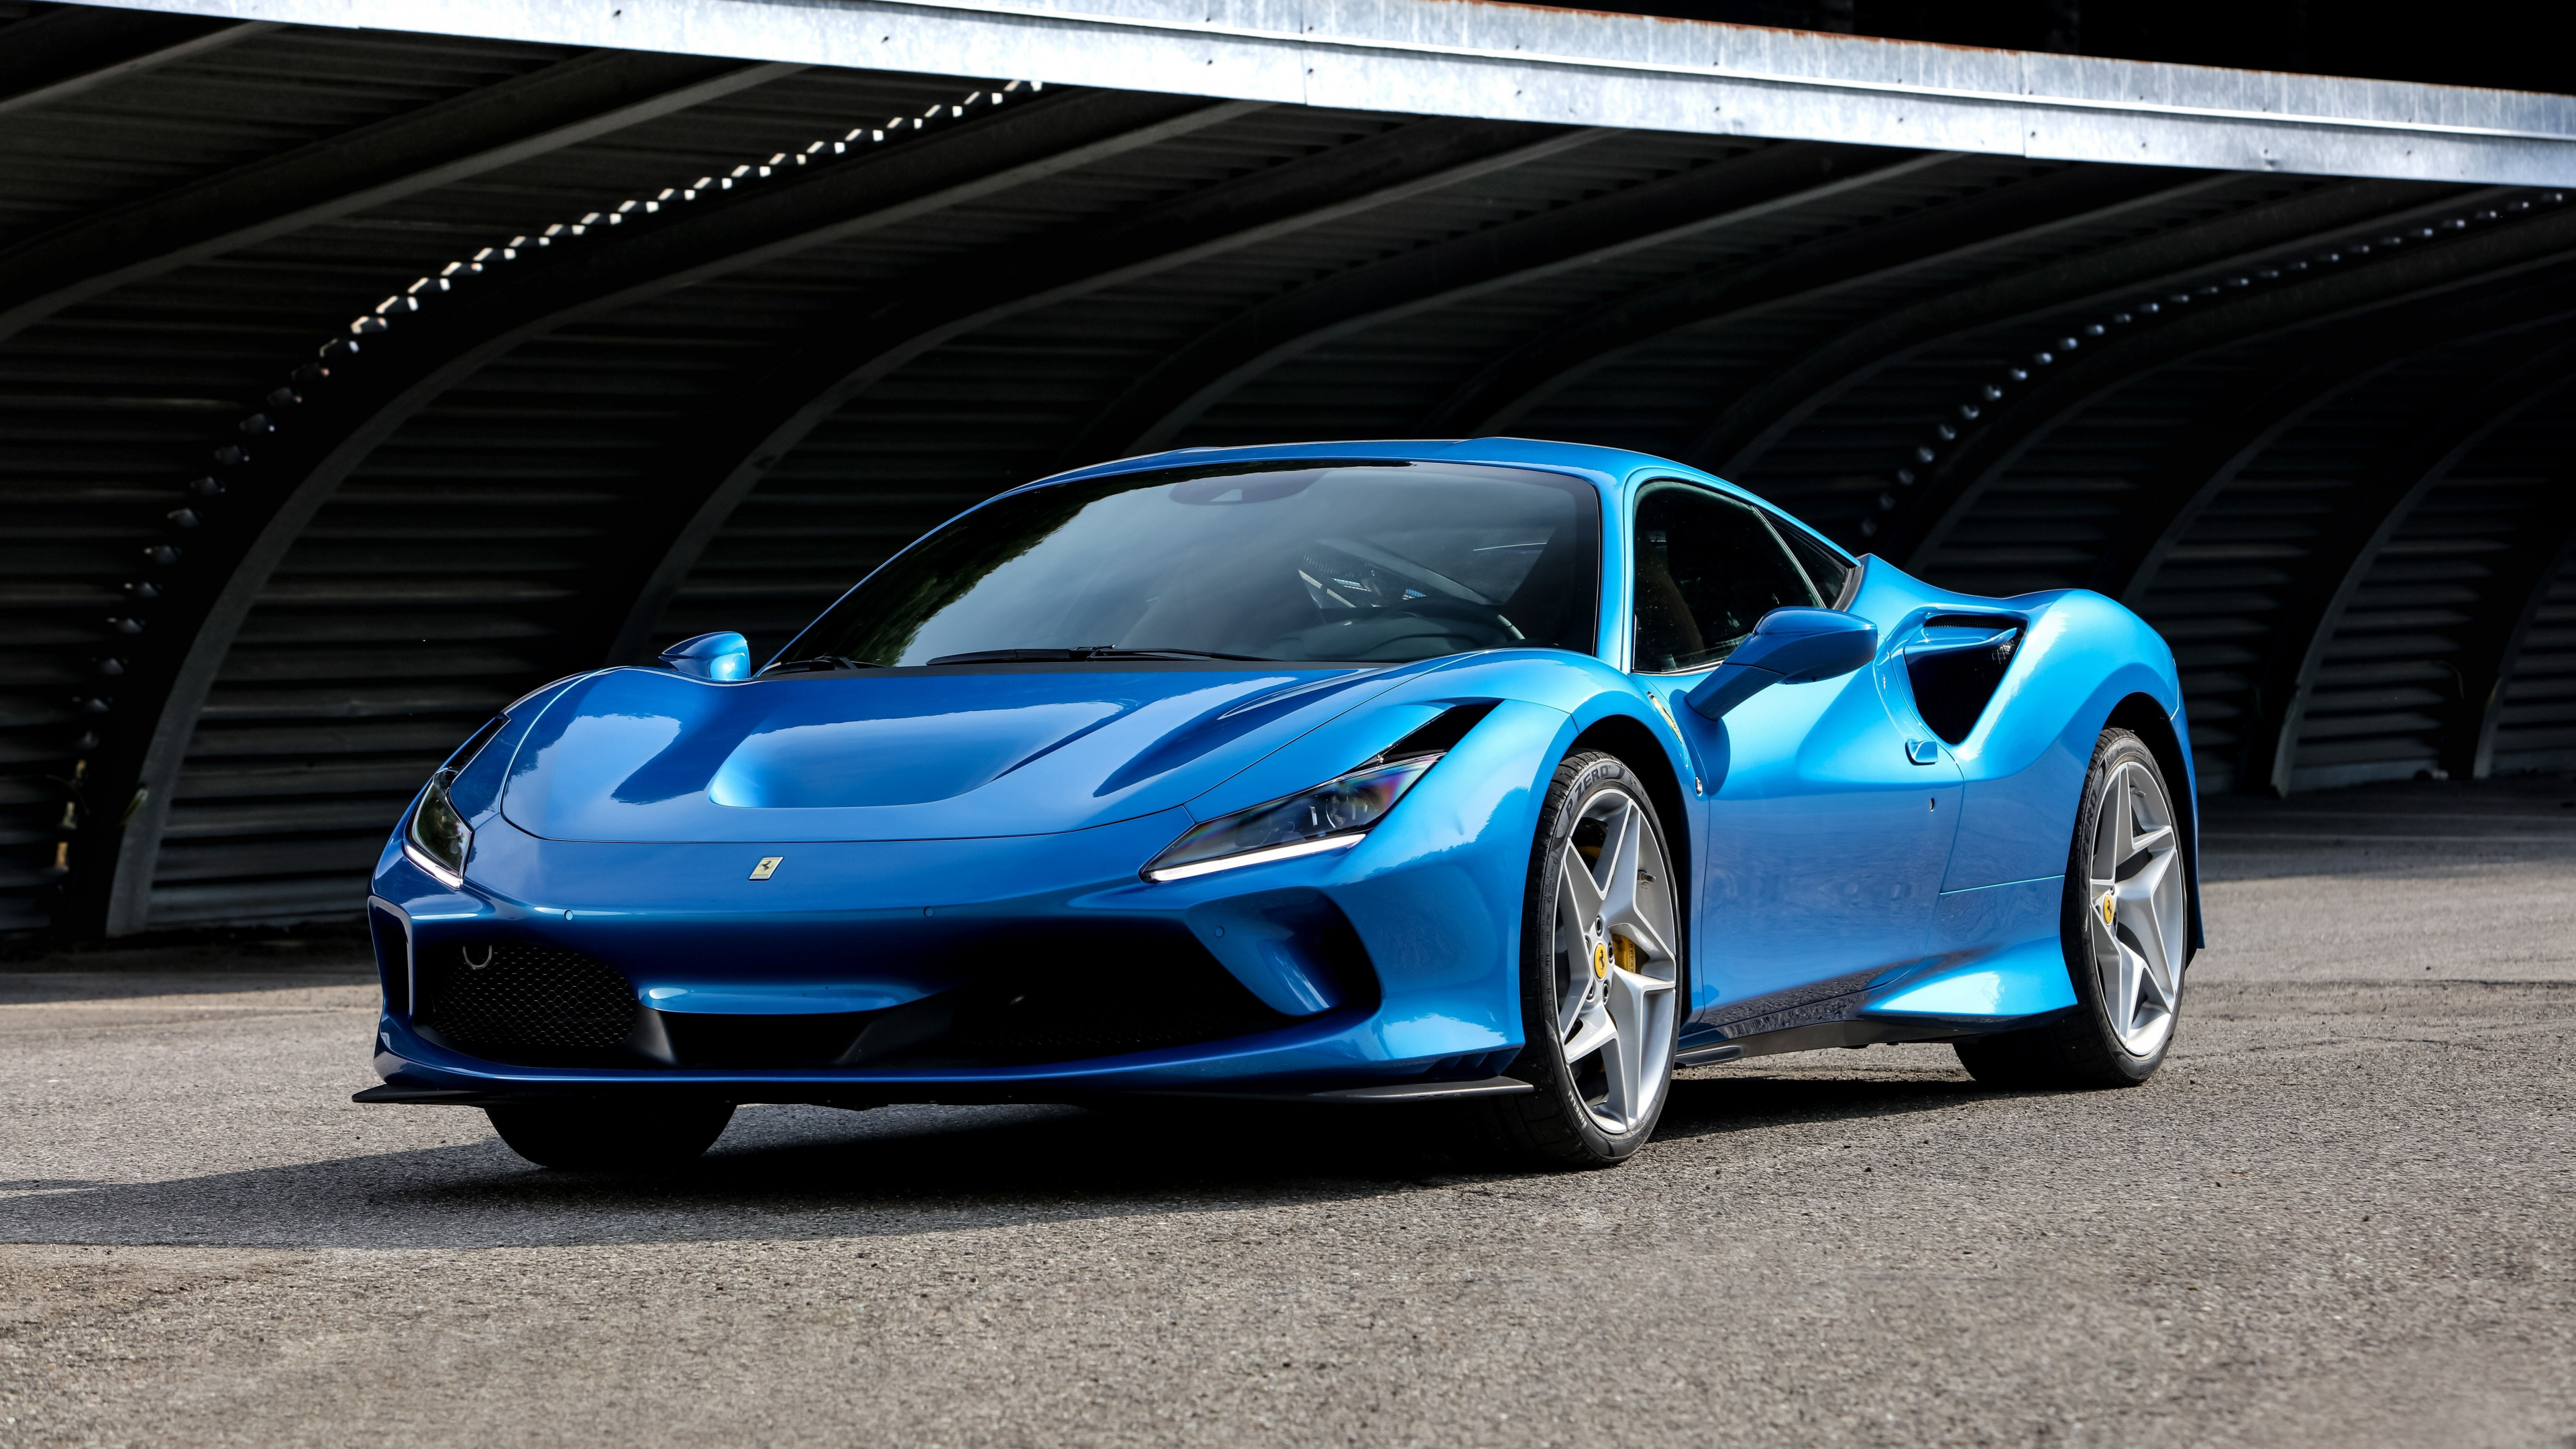 Ferrari F8, Blue Ferrari F8 Tributo, 4K wallpaper, HD image, 3840x2160 4K Desktop